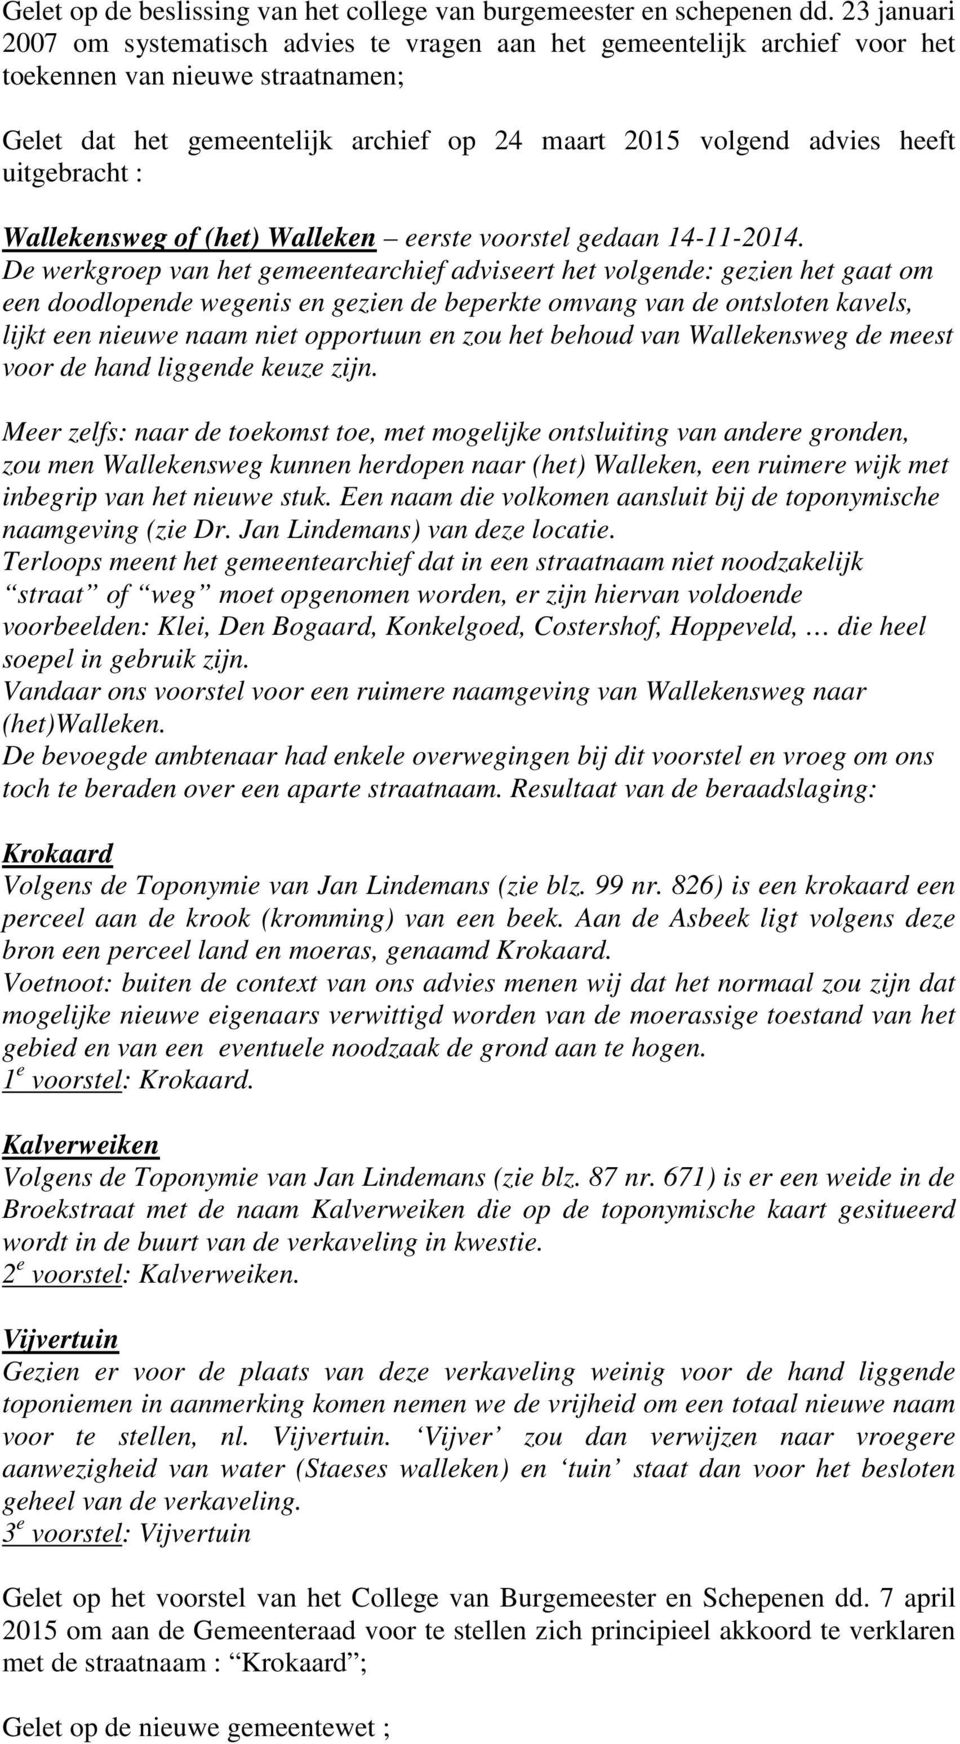 uitgebracht : Wallekensweg of (het) Walleken eerste voorstel gedaan 14-11-2014.